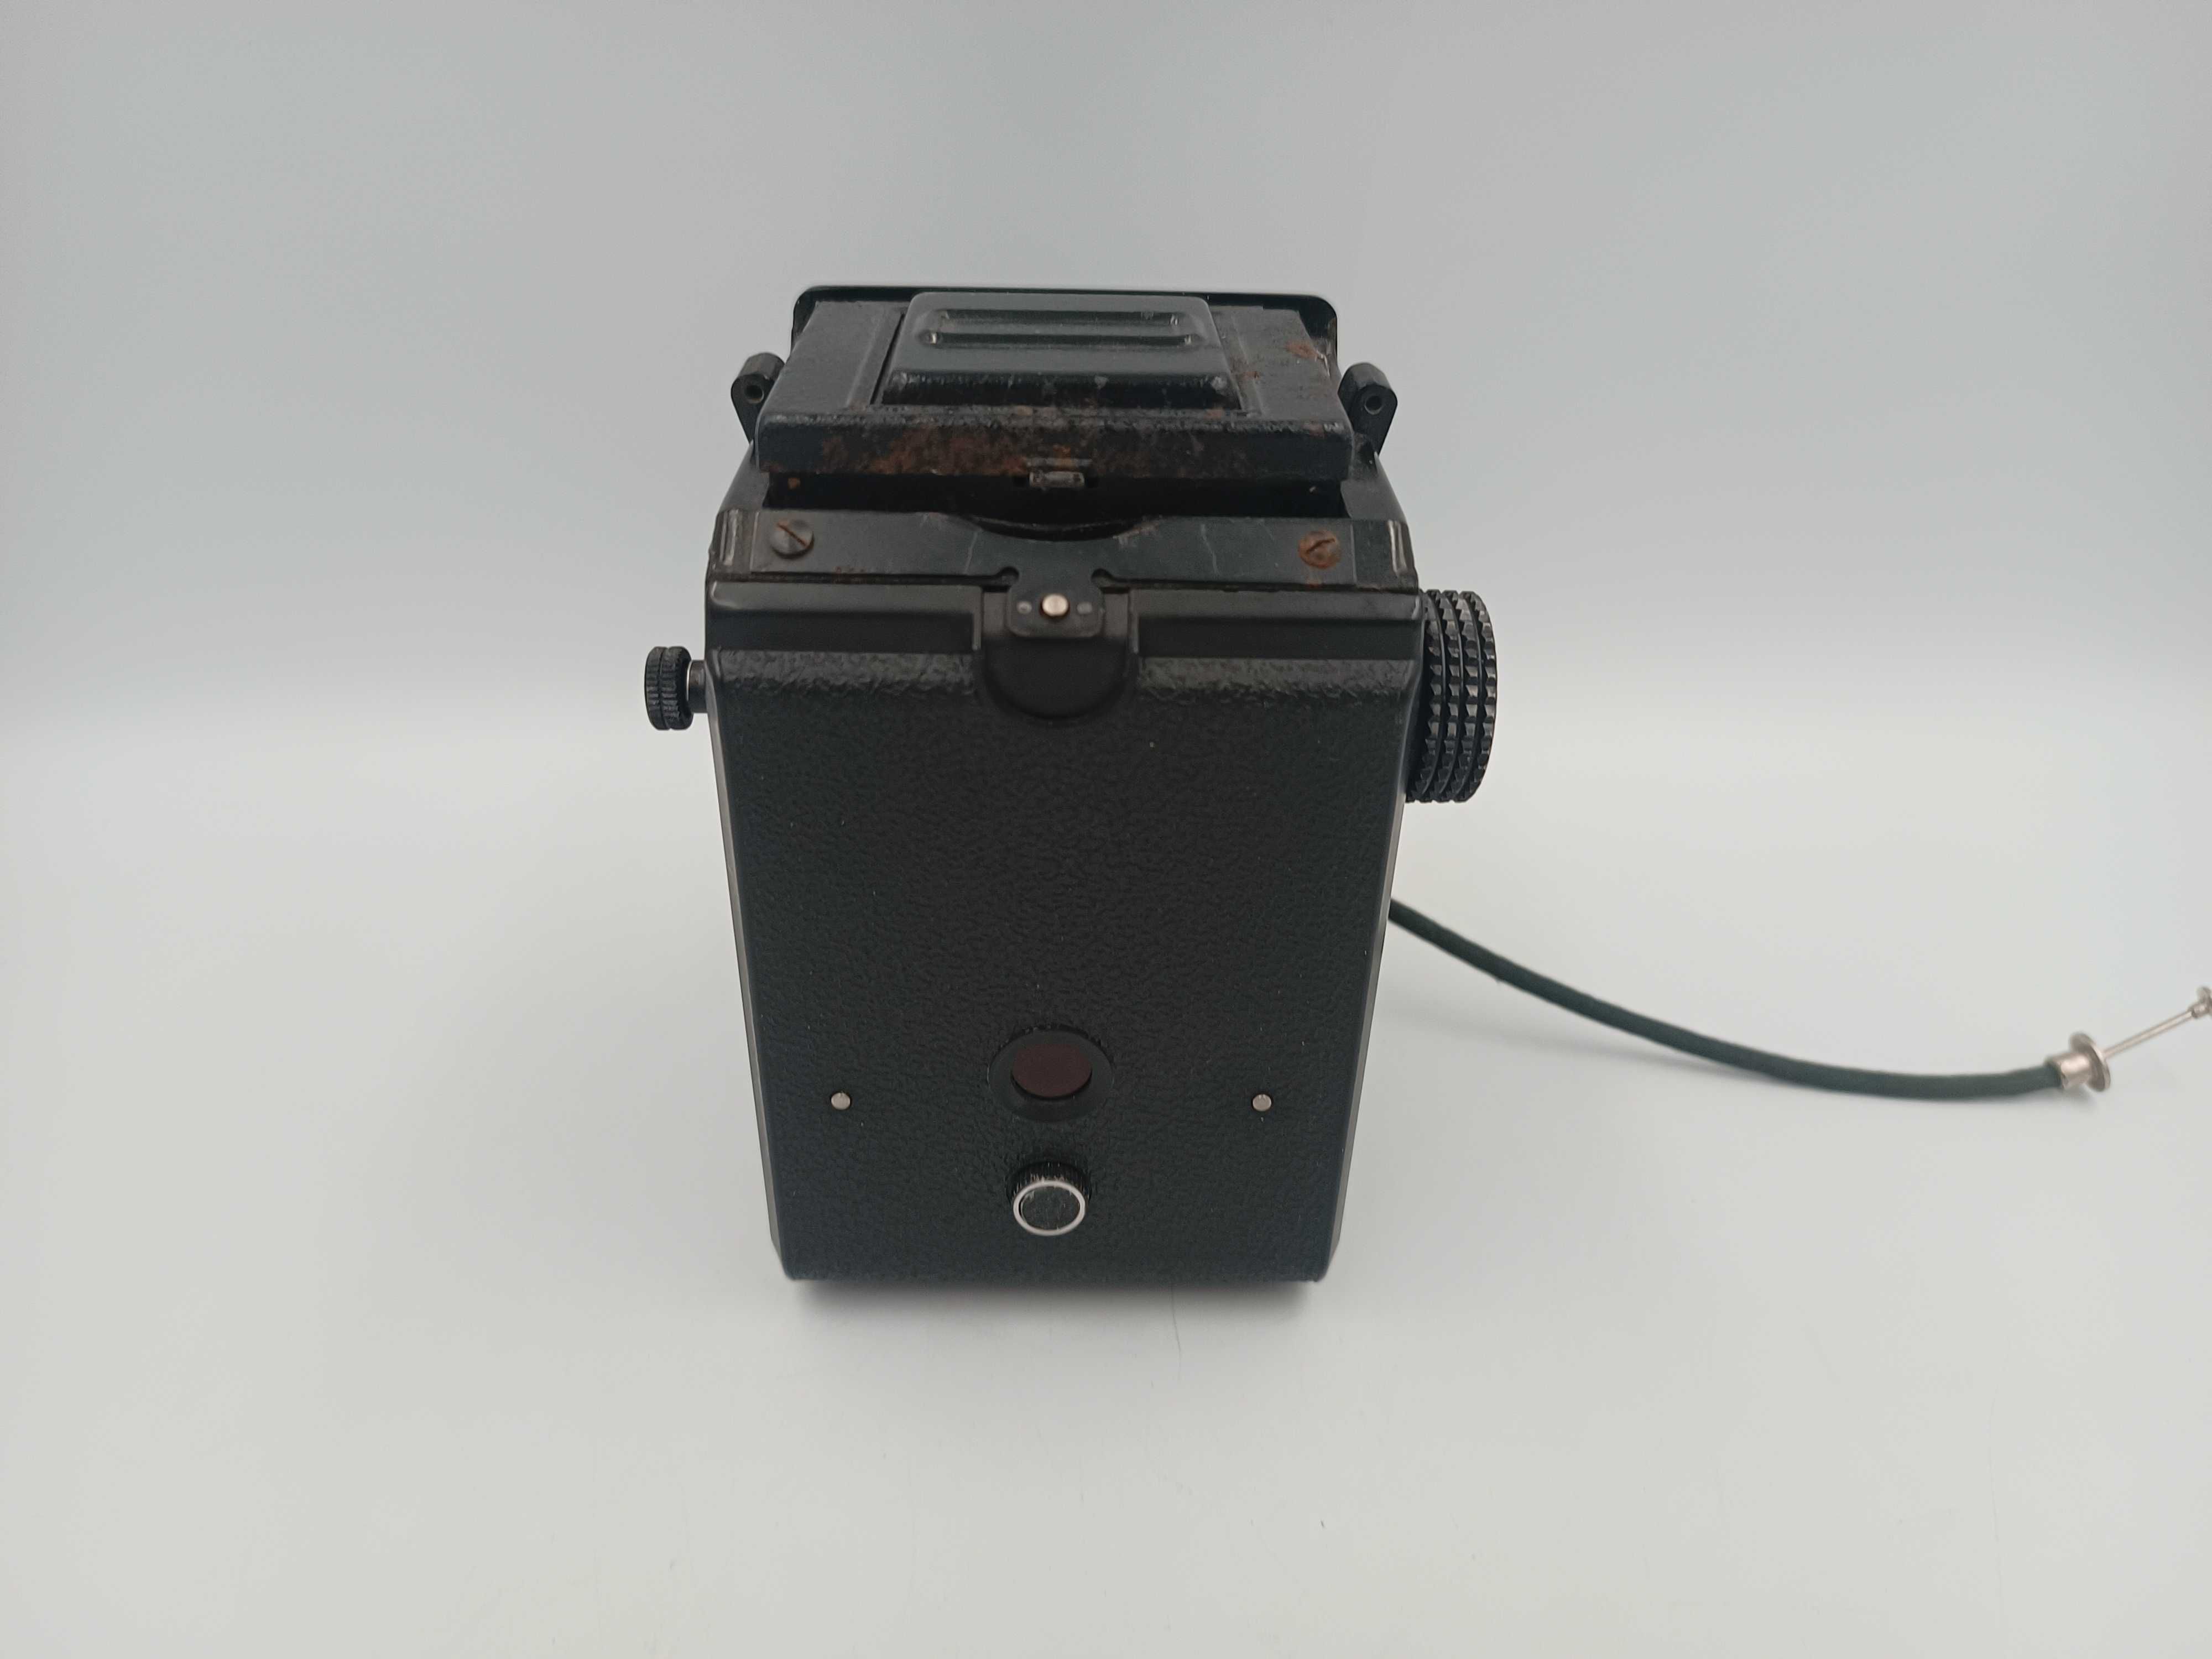 Analogowy aparat fotograficzny Lubitel 166B + etui pokrowiec